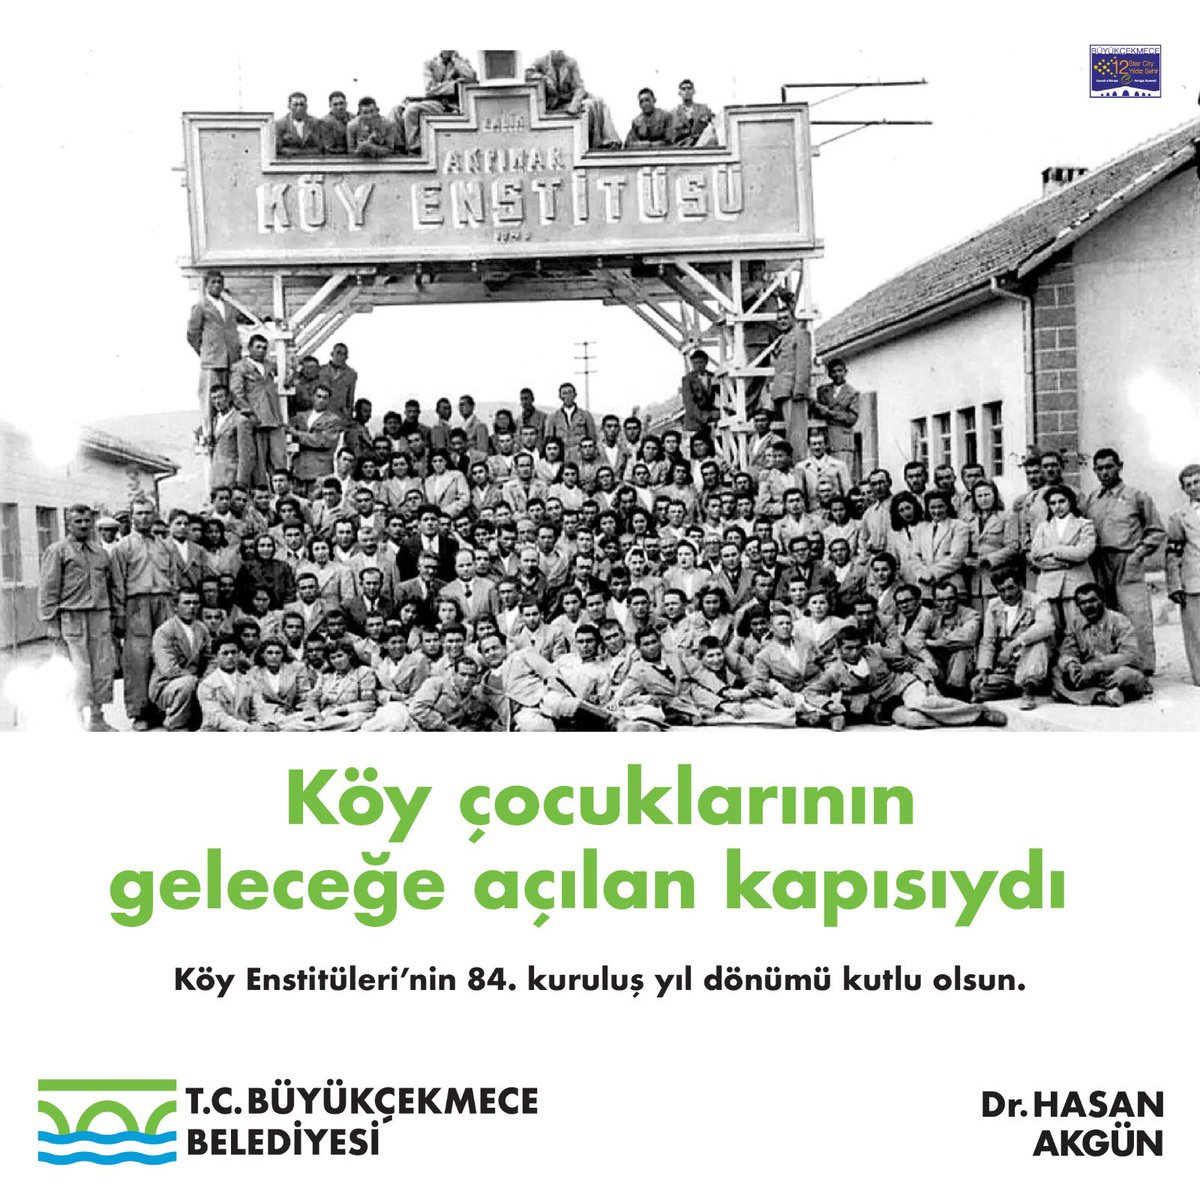 KUL OLMAKTAN YURTTAŞ OLMAYA GEÇİŞİN ADIDIR KÖY ENSTİTÜLERİ Bilime, sanata, tarıma ve insana değer veren, ülkemizin en büyük aydınlanma hareketi olan Köy Enstitüleri’nin 84.kuruluş yıldönümünde, başta Başöğretmenimiz Mustafa Kemal Atatürk’ü, 2. Cumhurbaşkanımız İsmet İnönü’yü,…